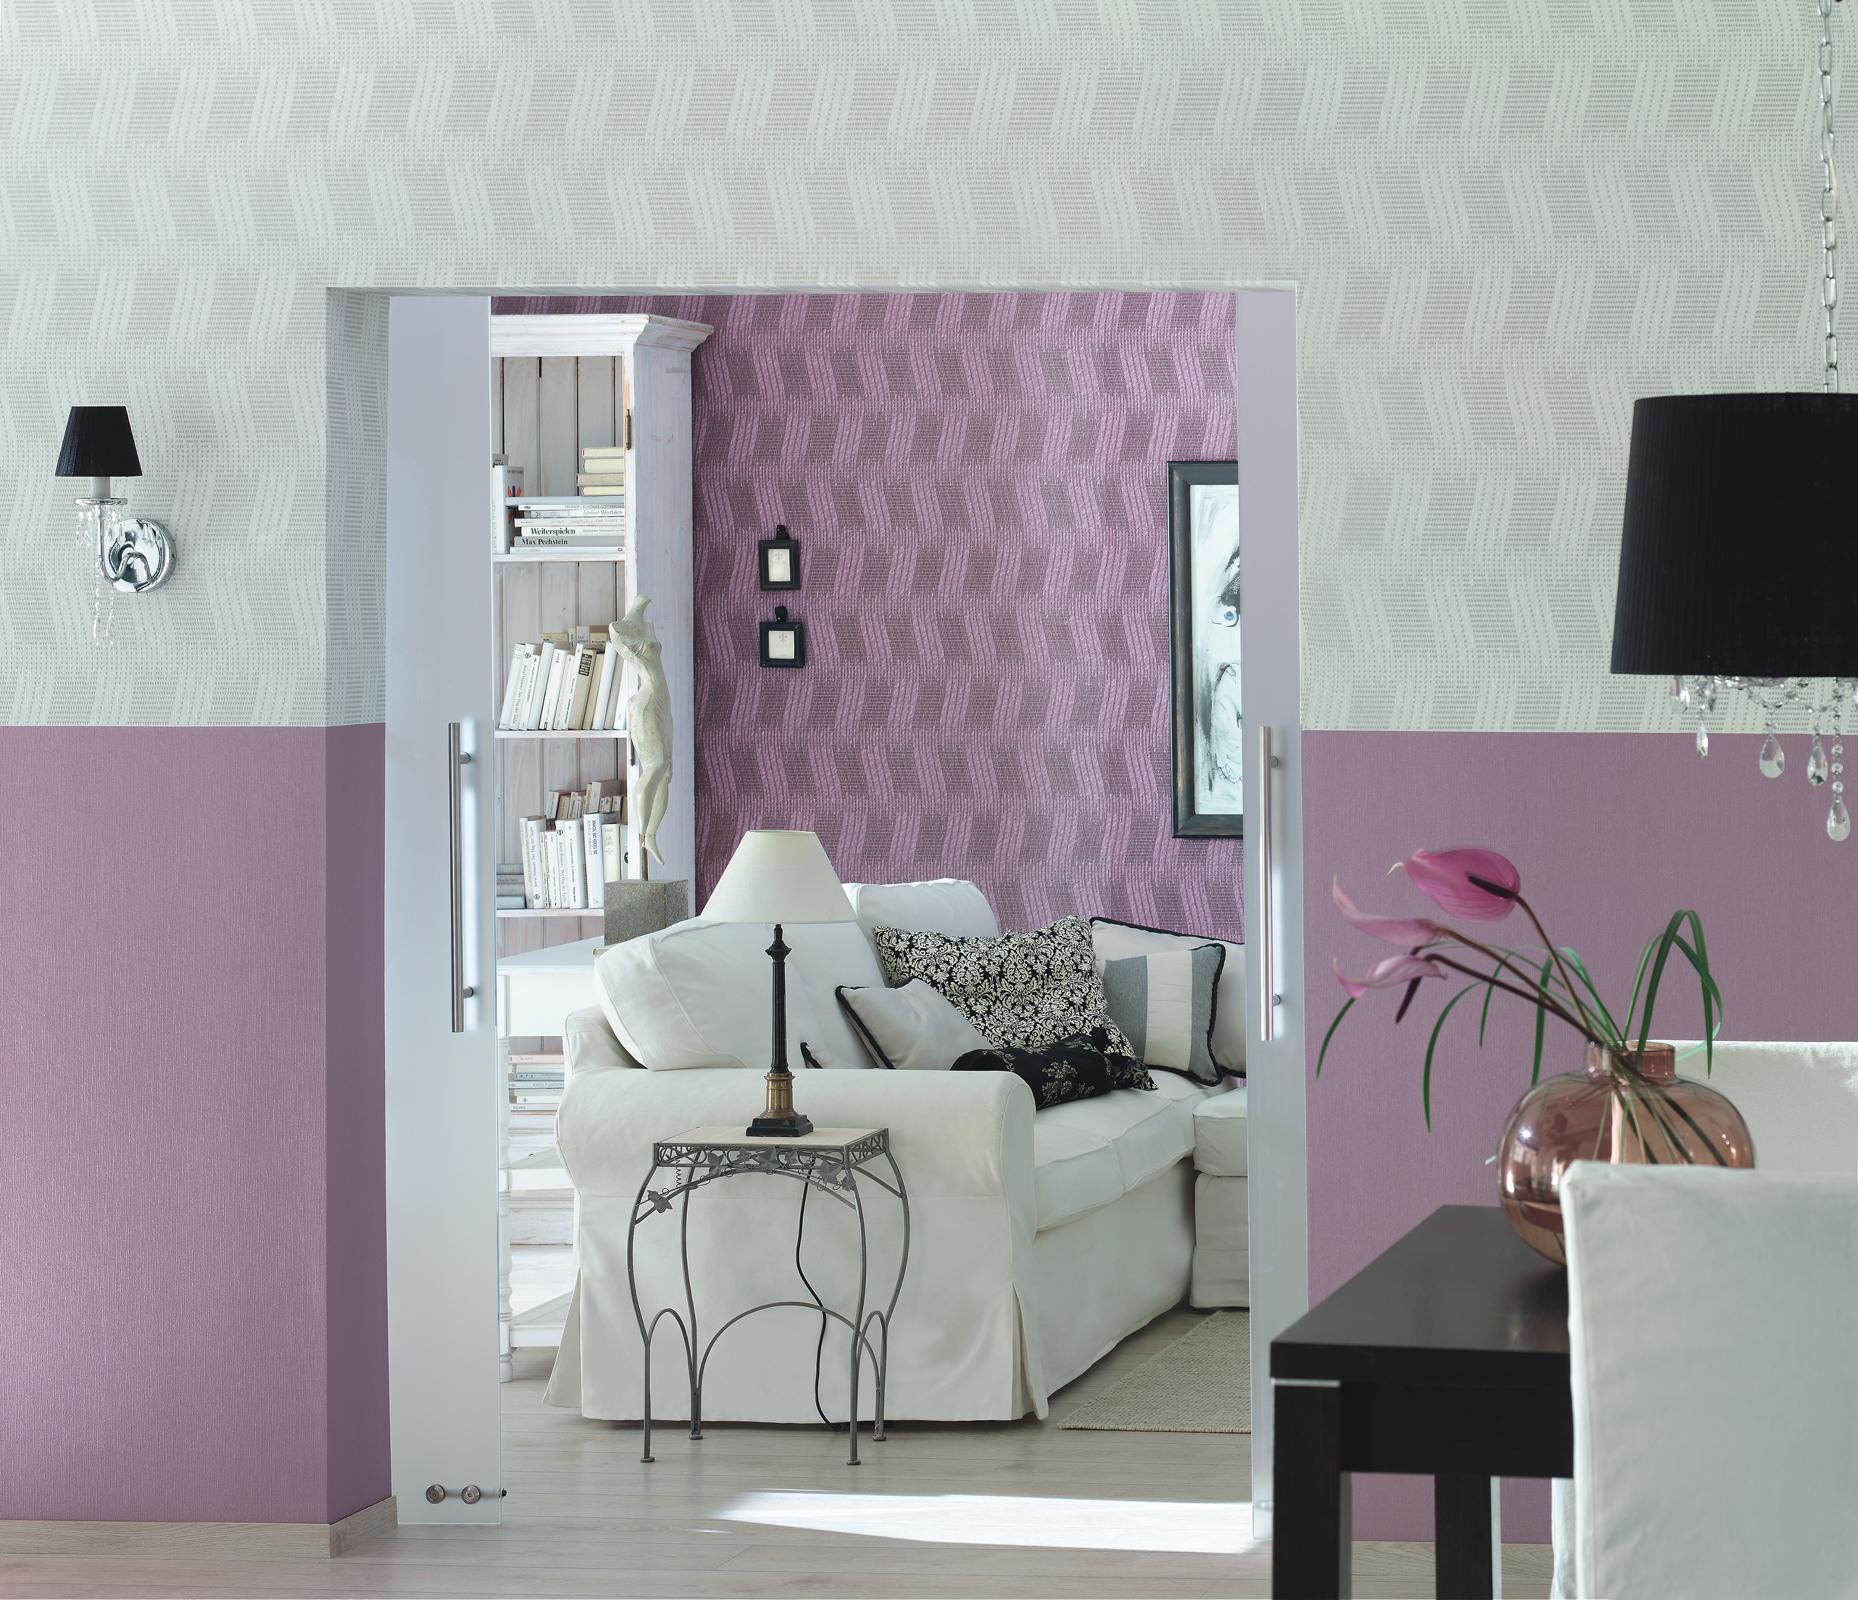 Zweifarbige Wandgestaltung in Rosa und Weiß #beistelltisch #wandfarbe #wandgestaltung #sofa #mustertapete #rosawandfarbe #tapete #wohnzimmerwandgestaltung #designwand ©Rasch